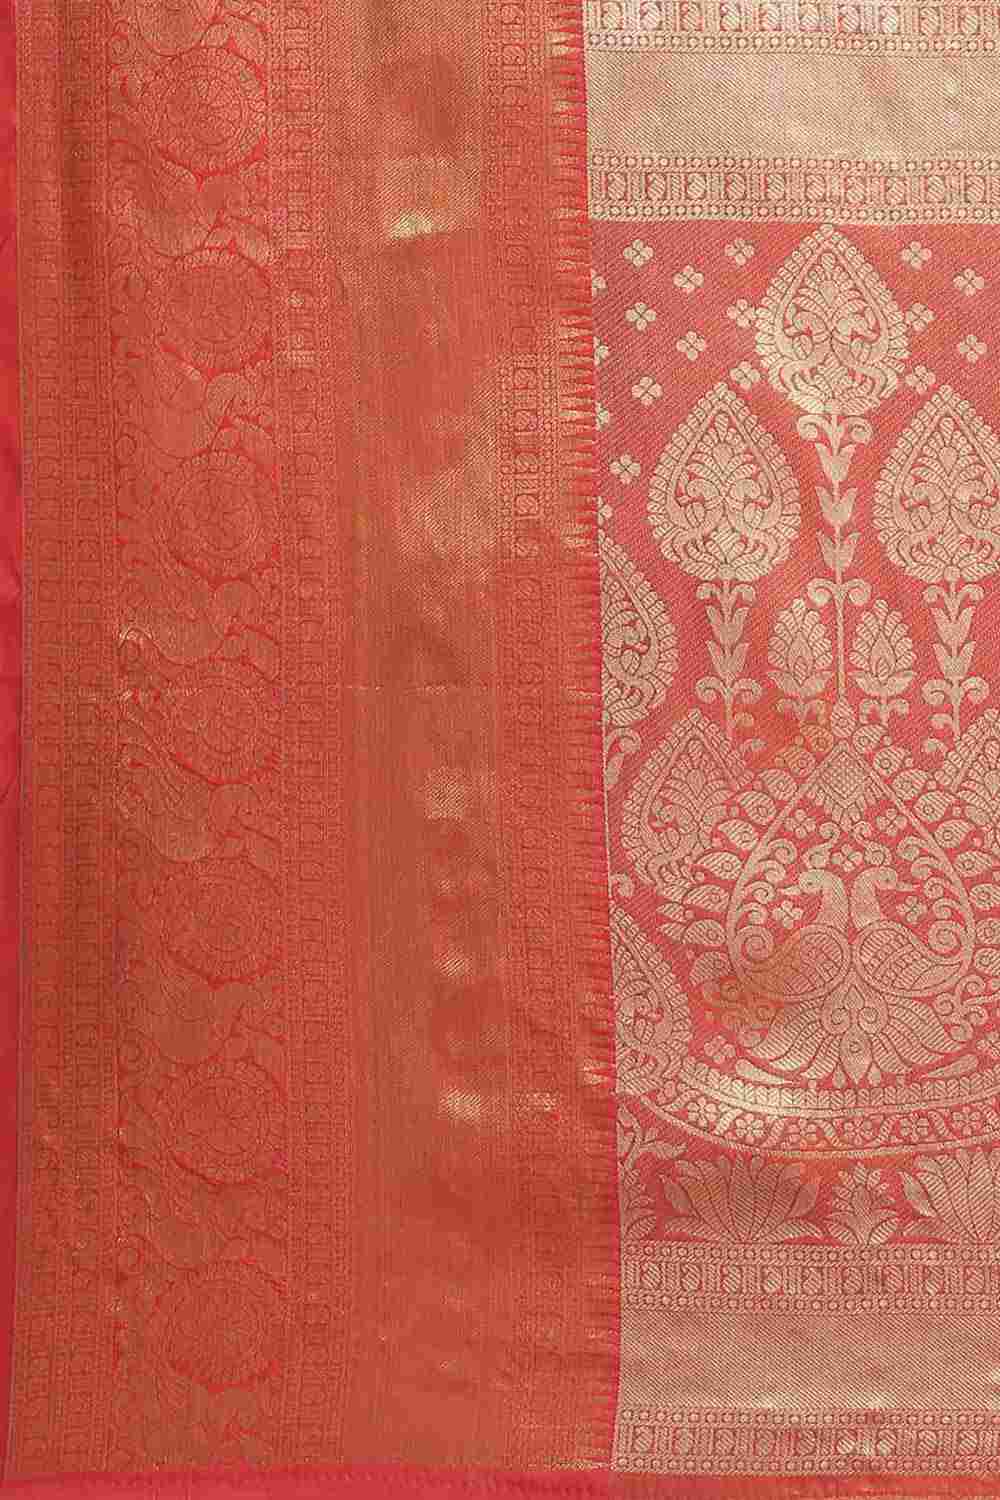 Buy Teal Art Silk brocade Saree Online - Zoom In 